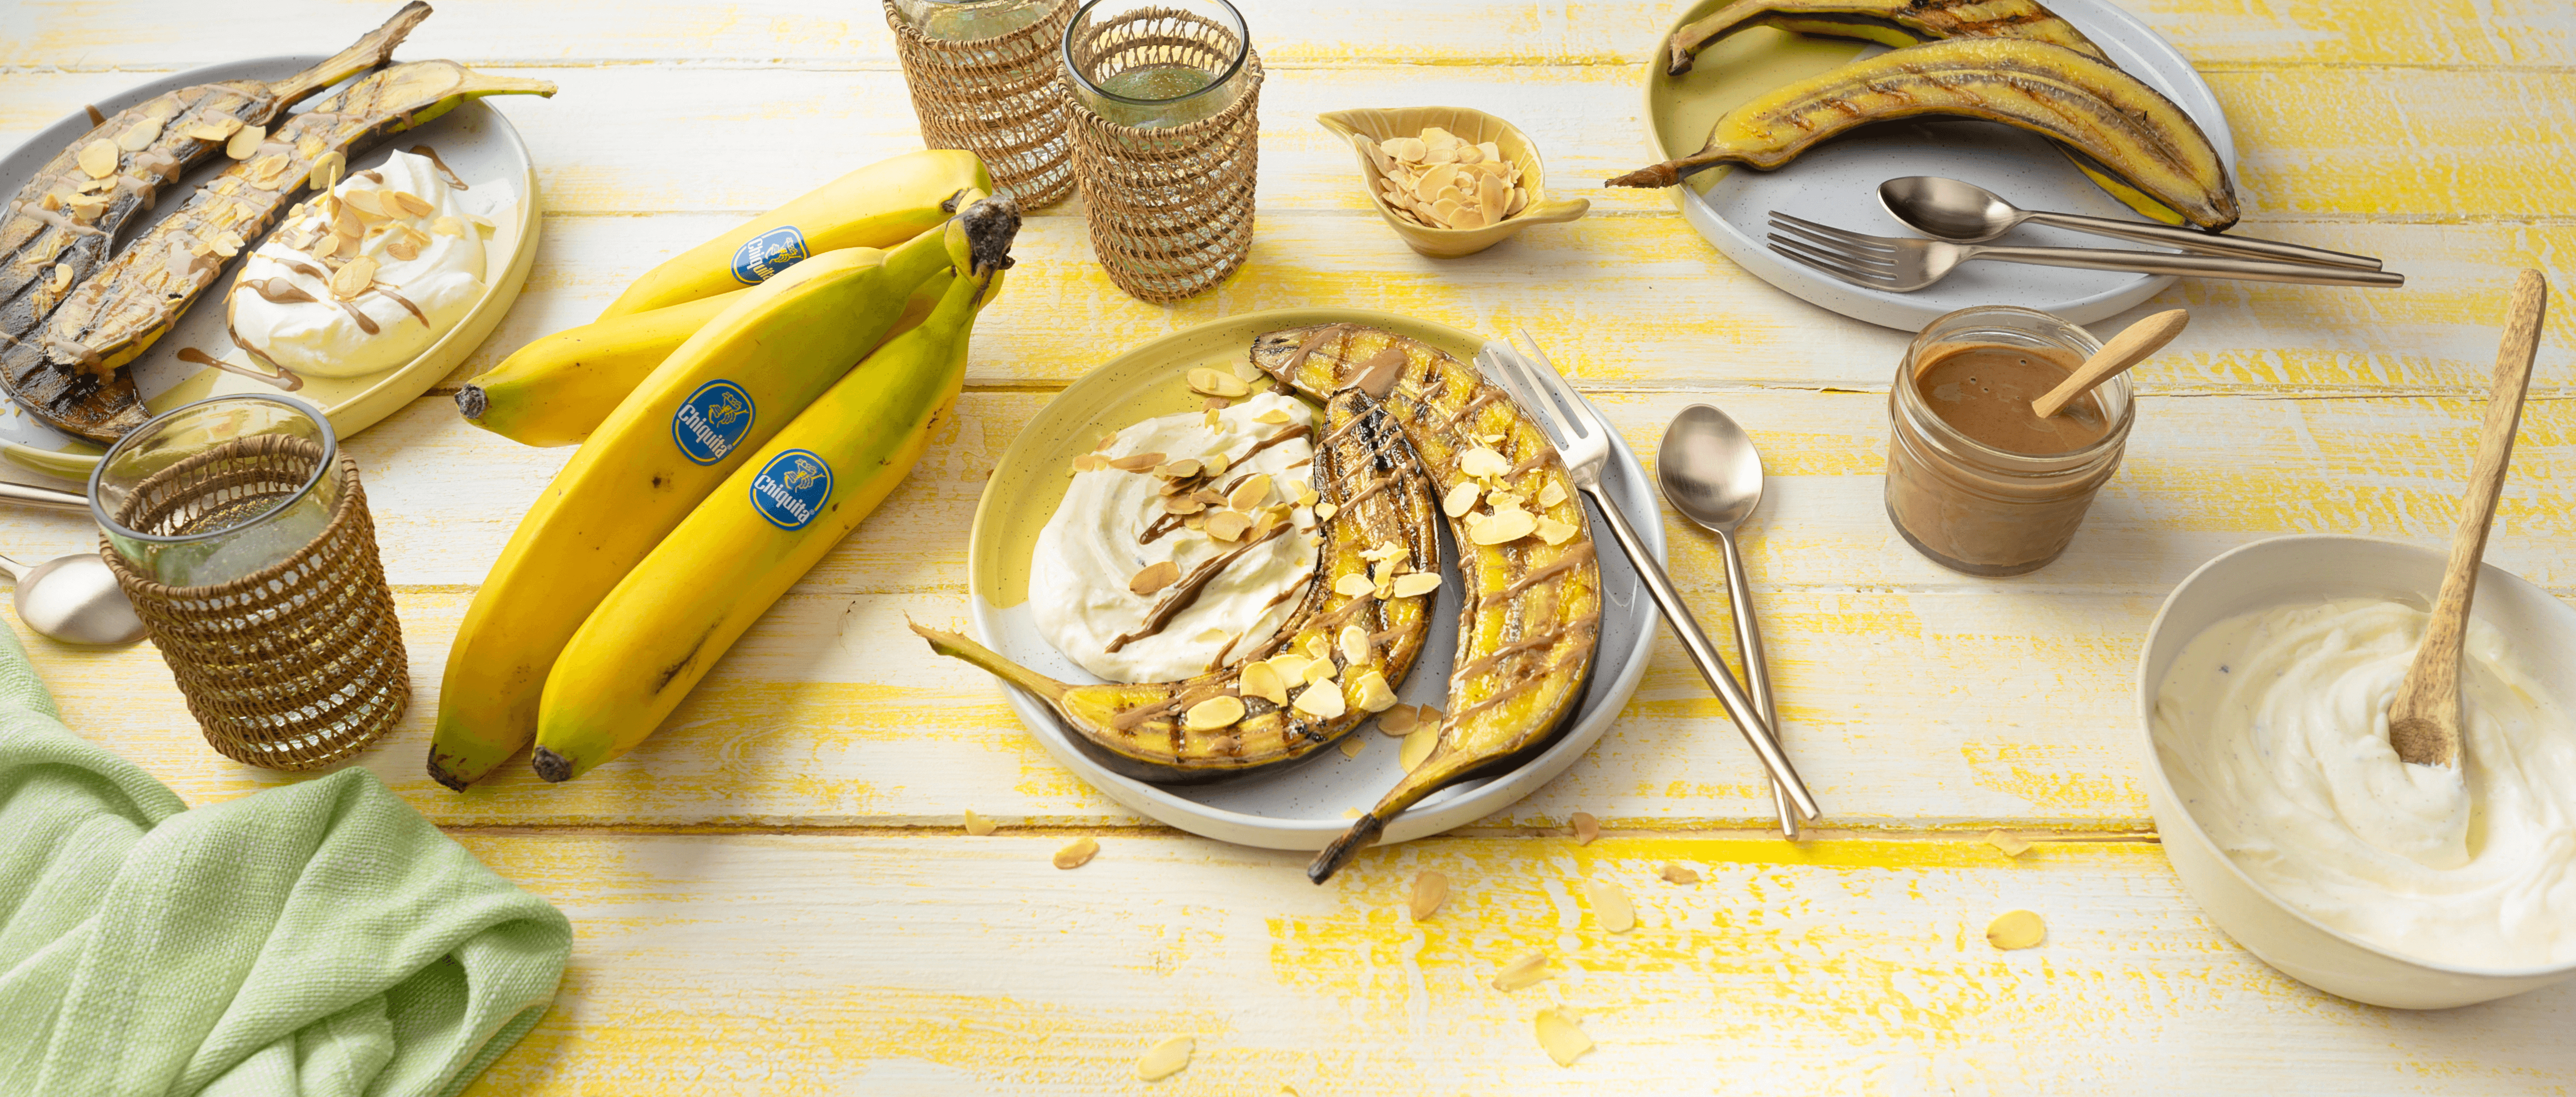 Gegrillte Chiquita Bananen mit Vanilleskyr und Mandeln Rezept - REWE.de